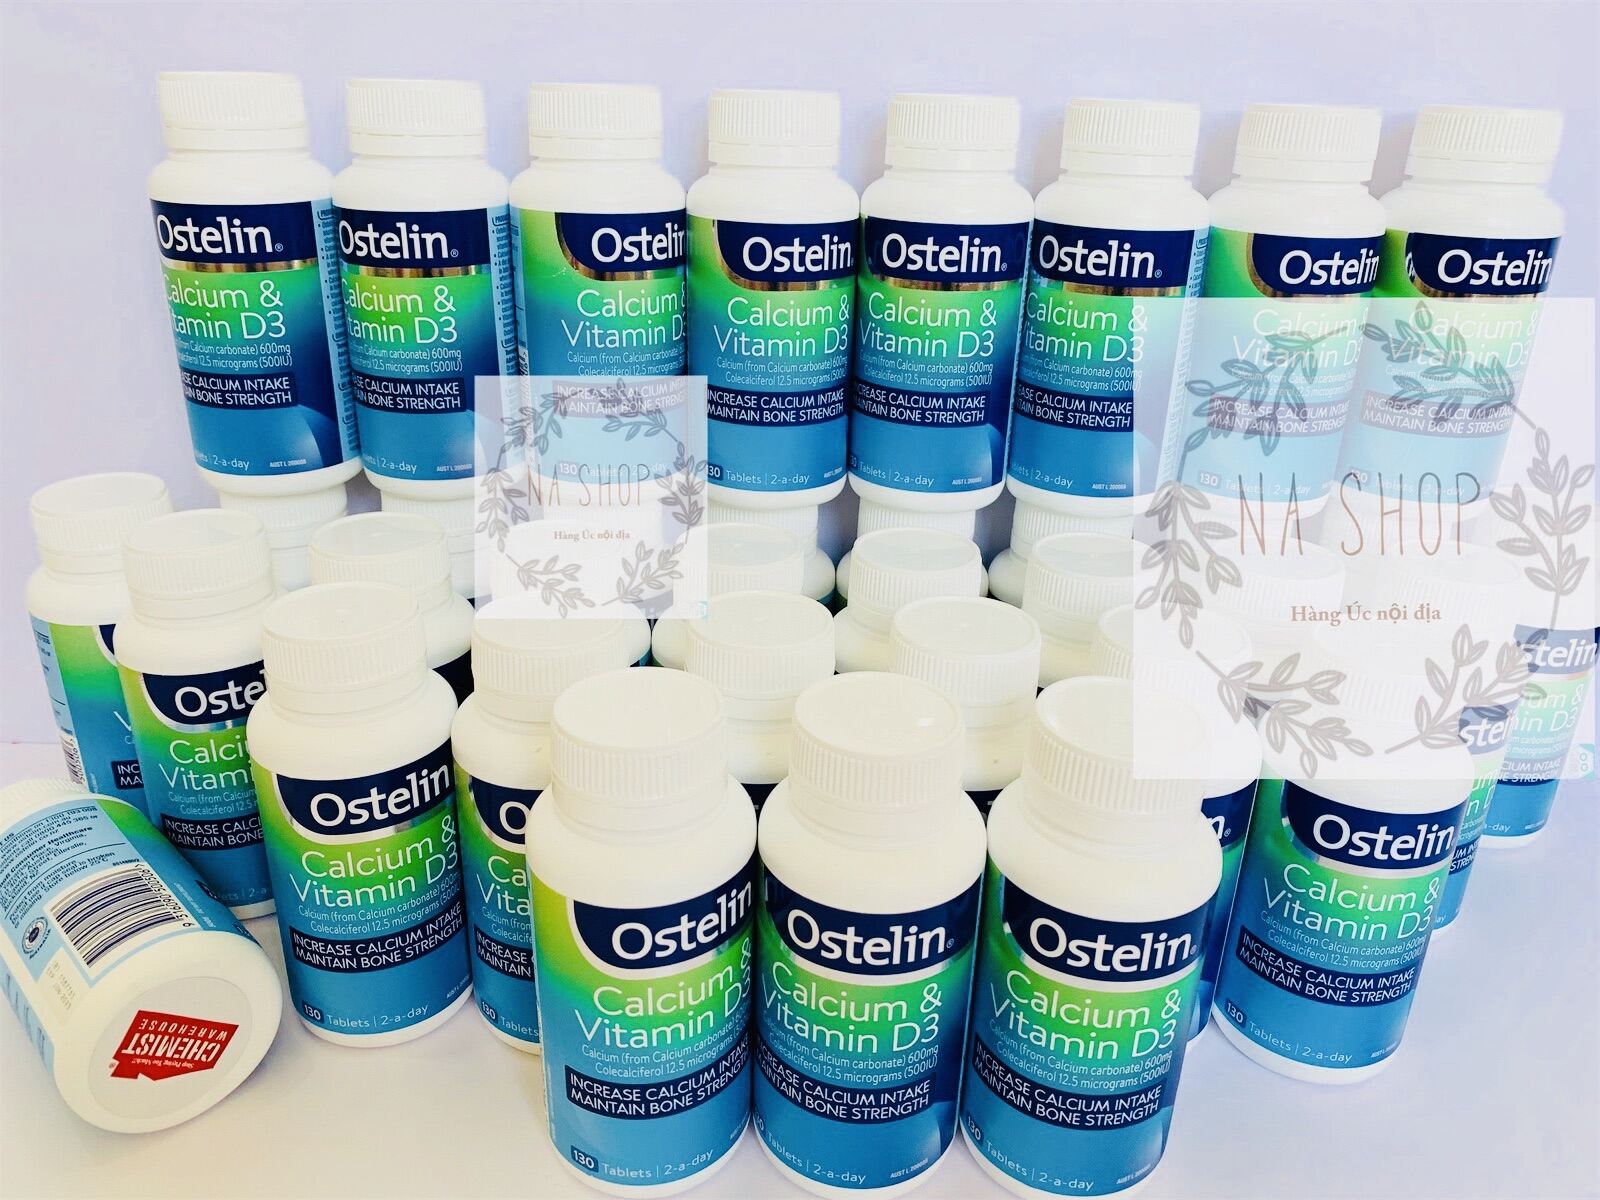 Ostelin Calcium & Vitamin D3- Canxi cho bà bầu 130 viên mẫu mới